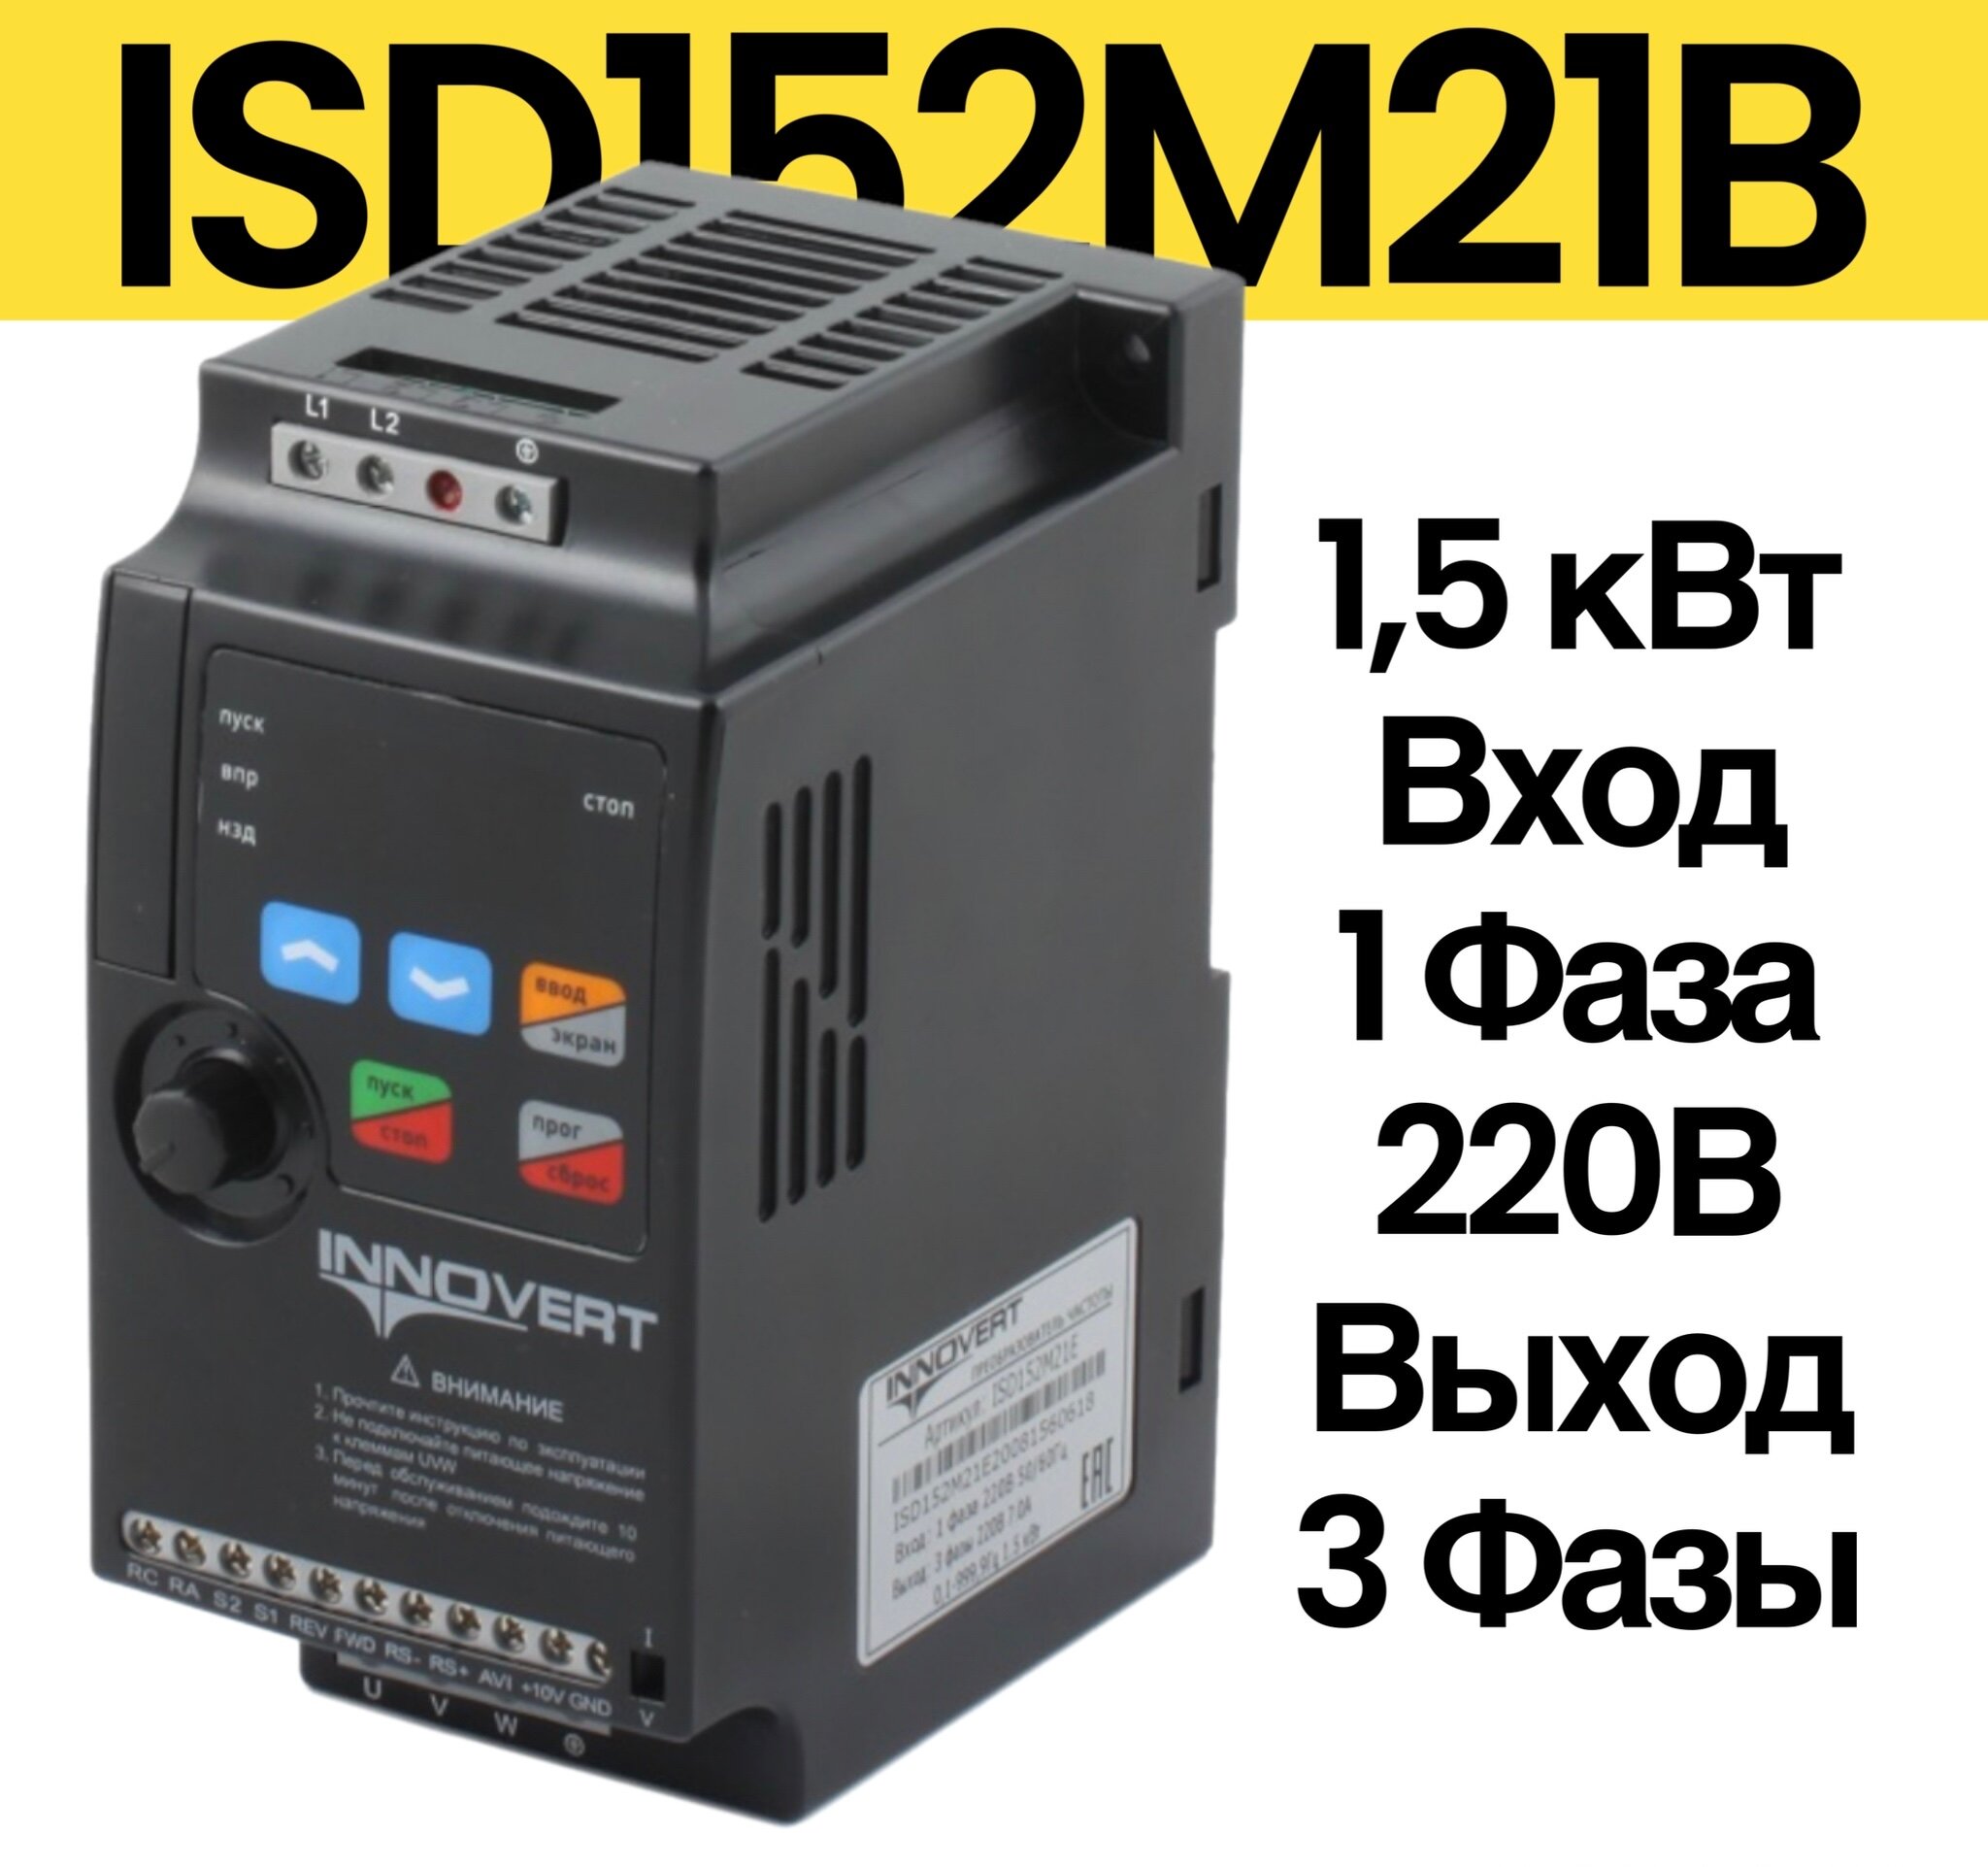 Частотный преобразователь INNOVERT ISD152M21E 1,5 квт 220В /Преобразователь частоты Инноверт